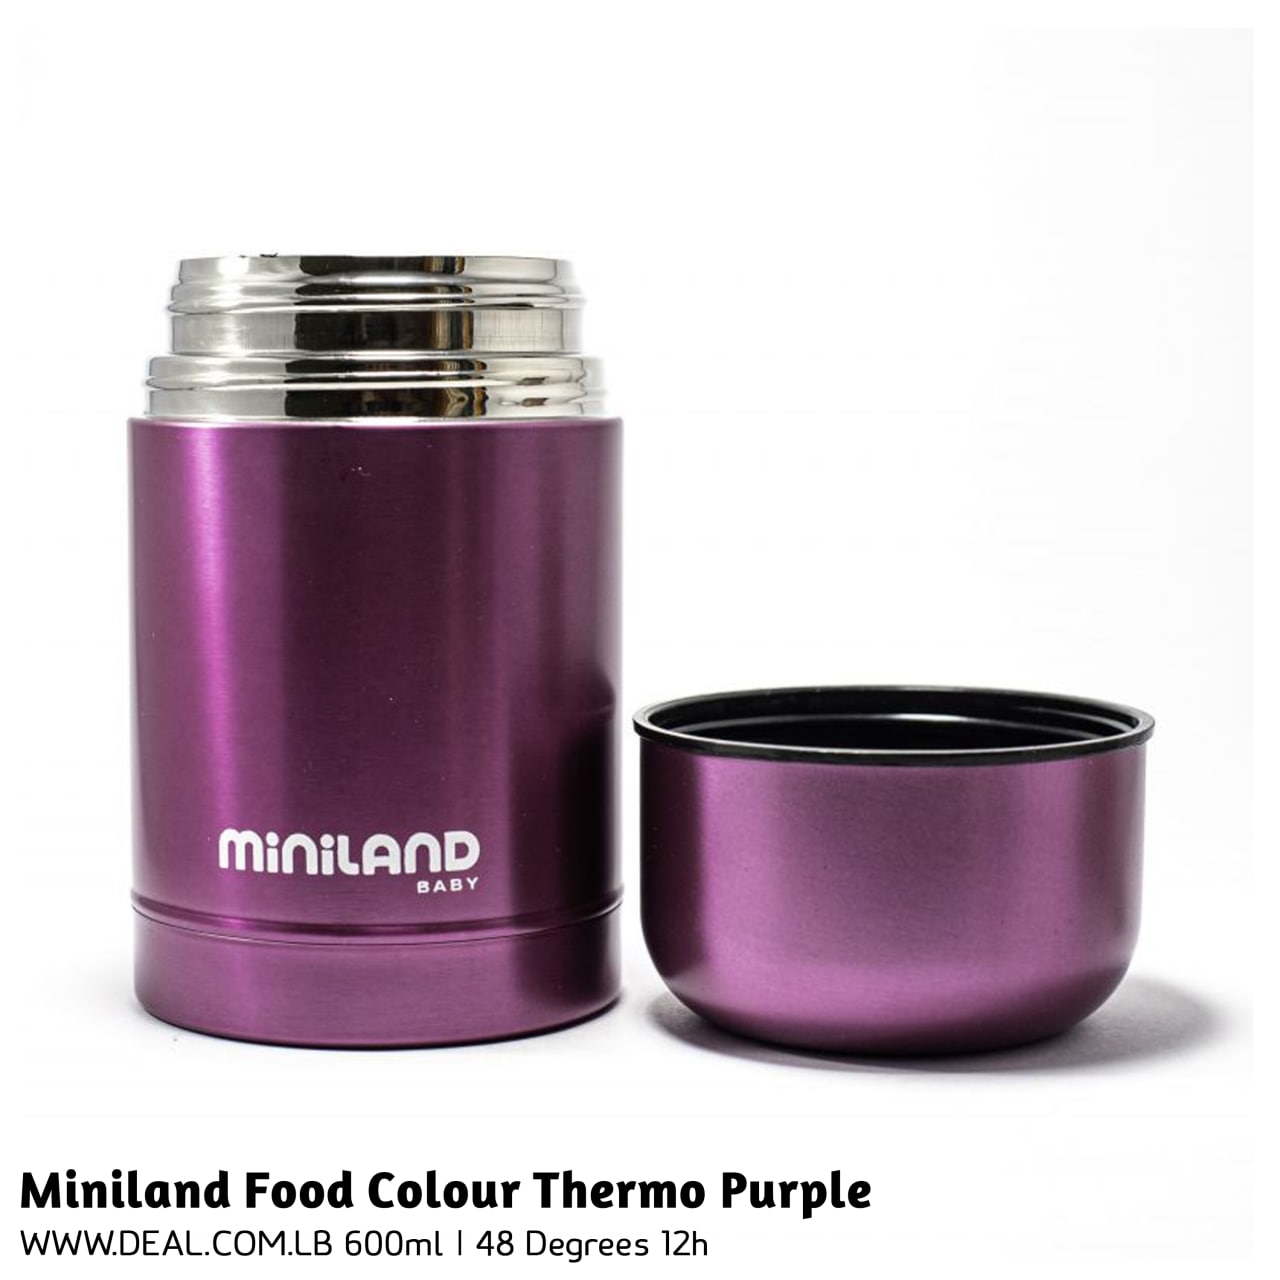 Miniland Food Color Thermo Purple